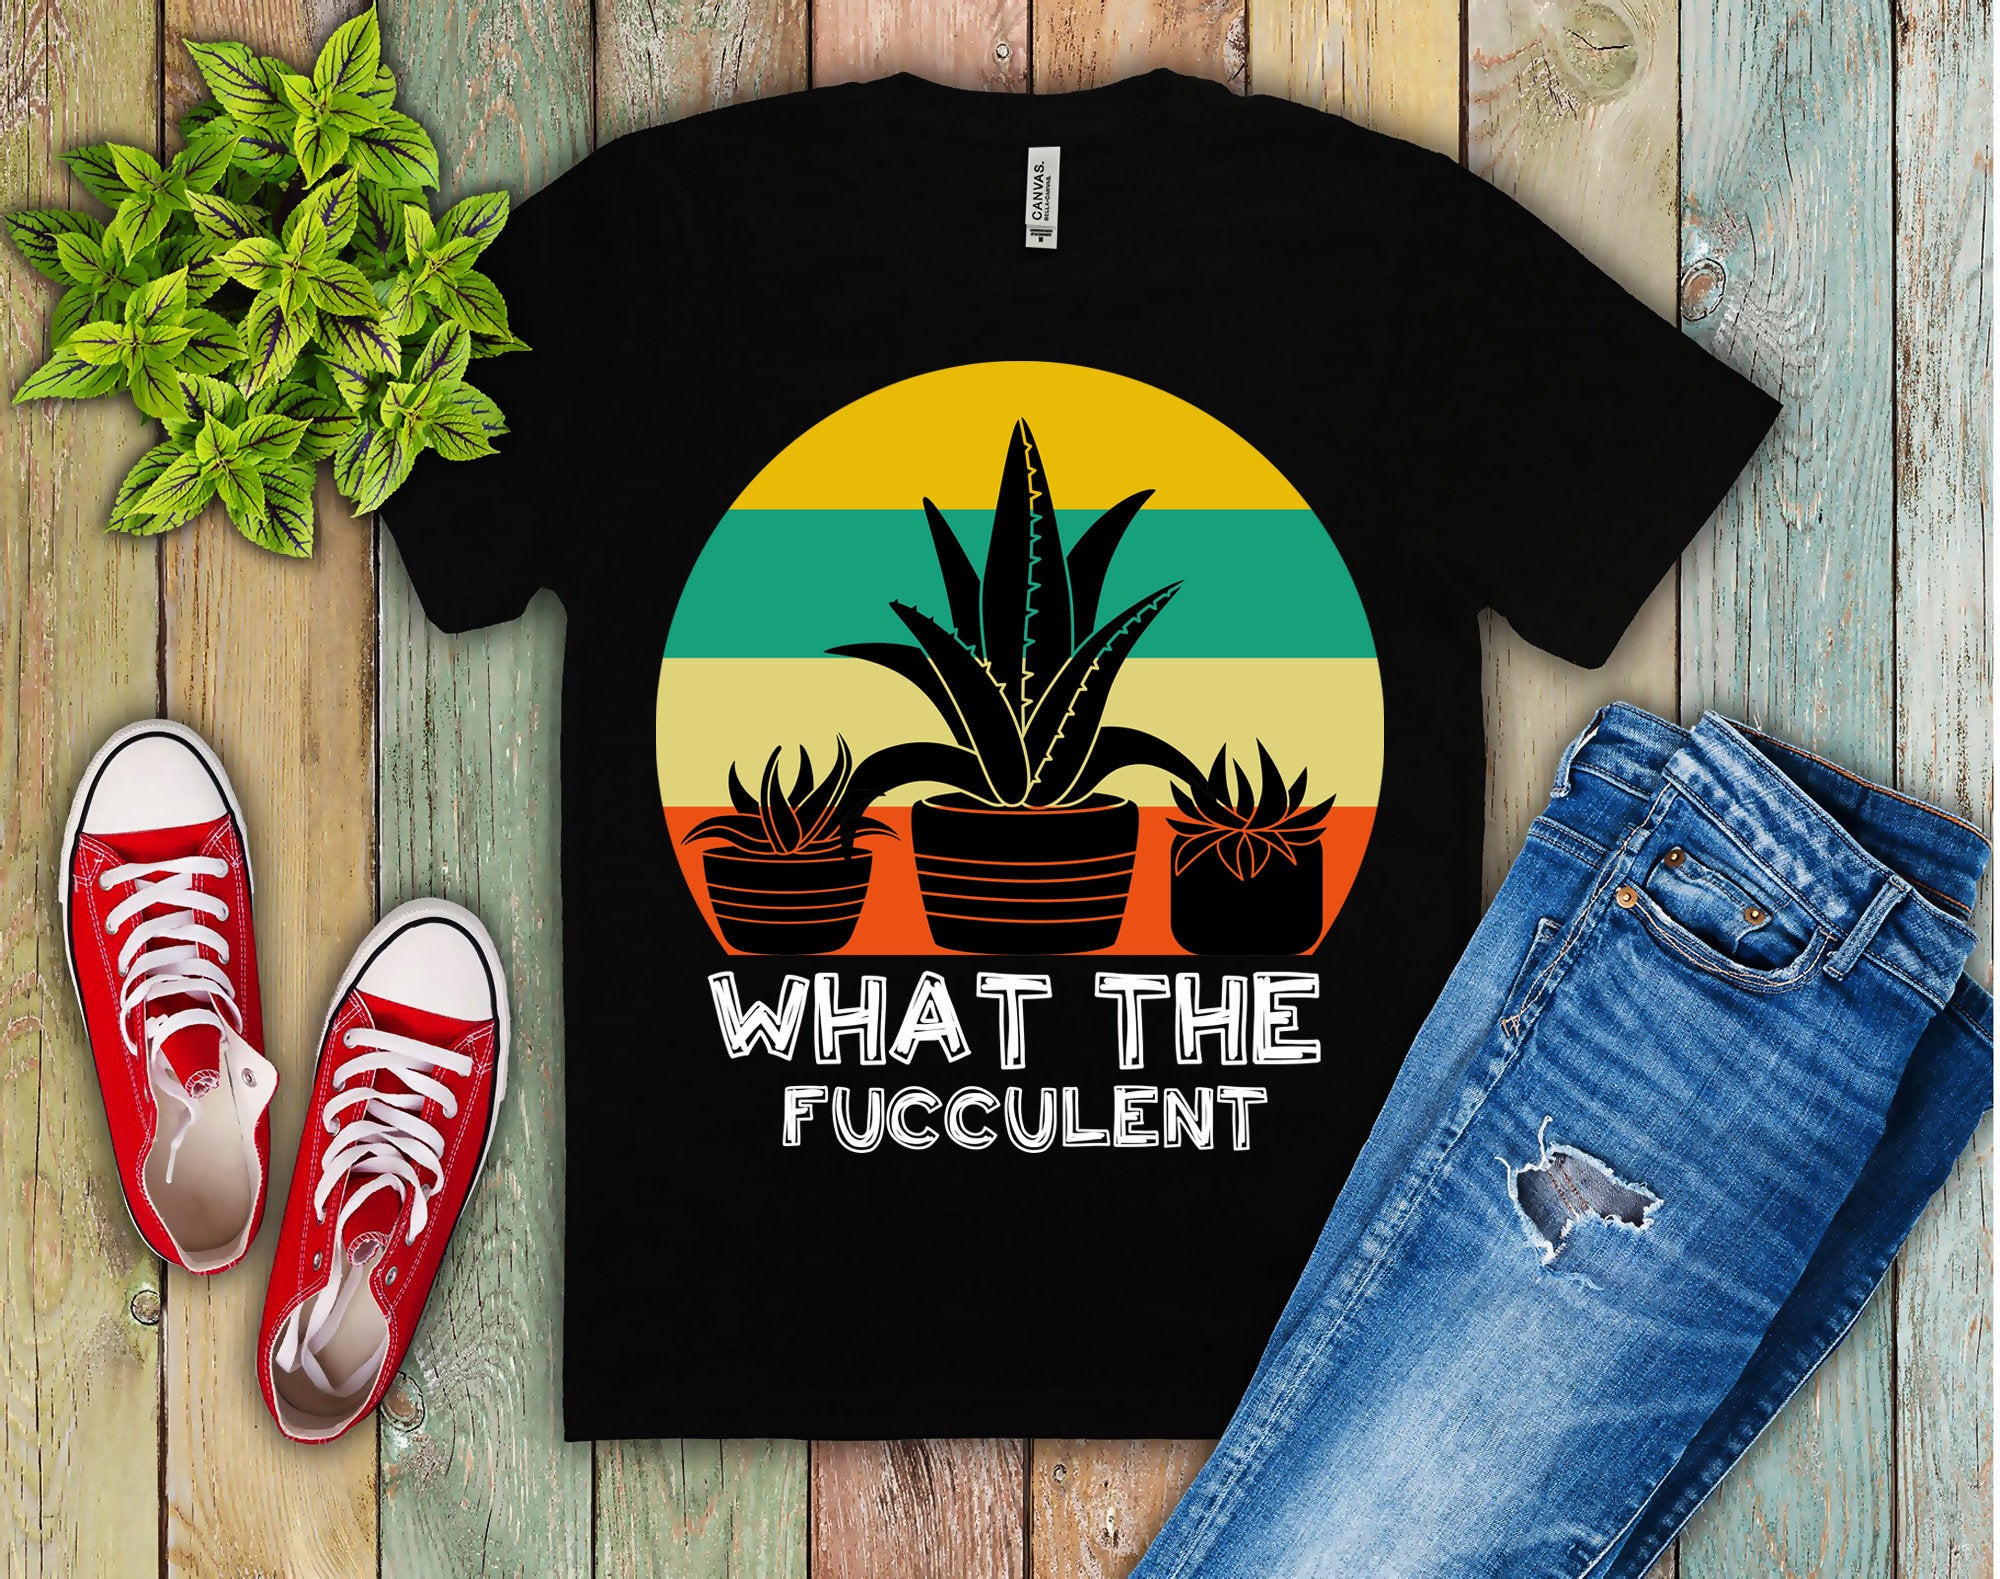 Co za fukulent | Koszulki Retro Sunset, T-shirt Fucculent, Koszula ogrodnicza, Koszula sukulentowa, Prezent dla ogrodnictwa roślin, Koszula z kaktusami - plusminusco.com